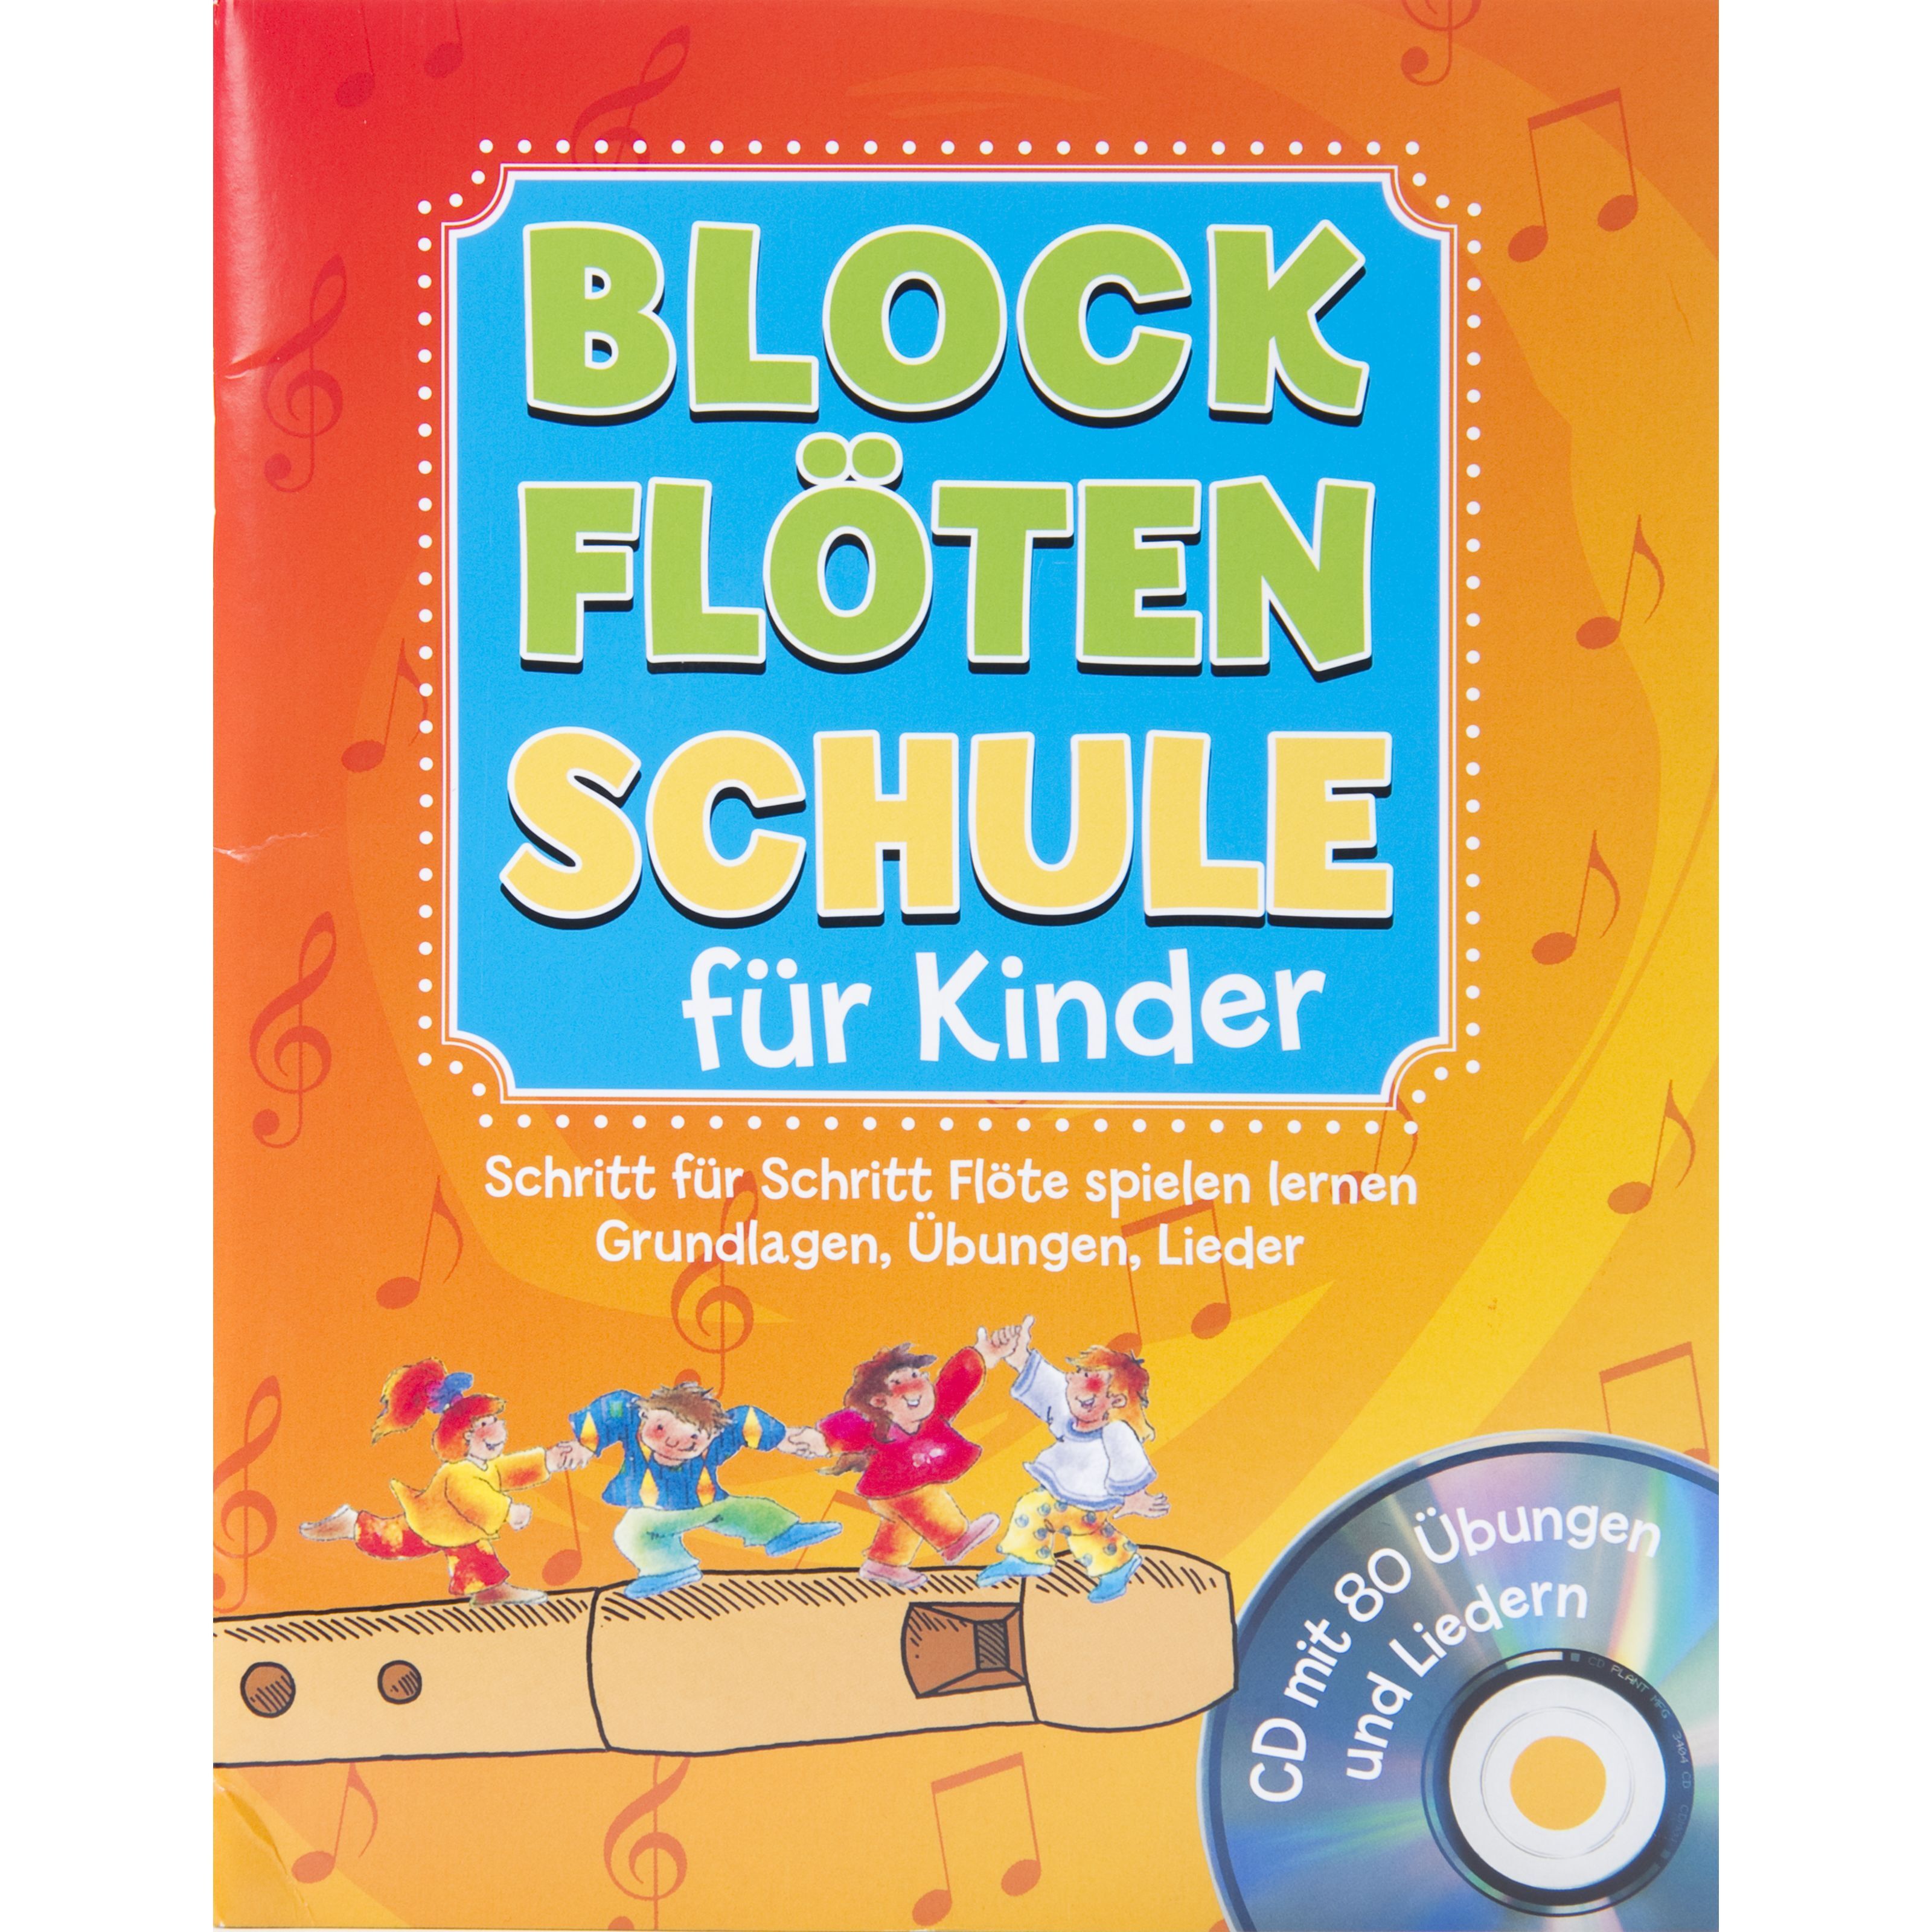 MUSIC STORE Blockflötenschule für Kinder, deutsches System - Schulwerk für Blockflöte